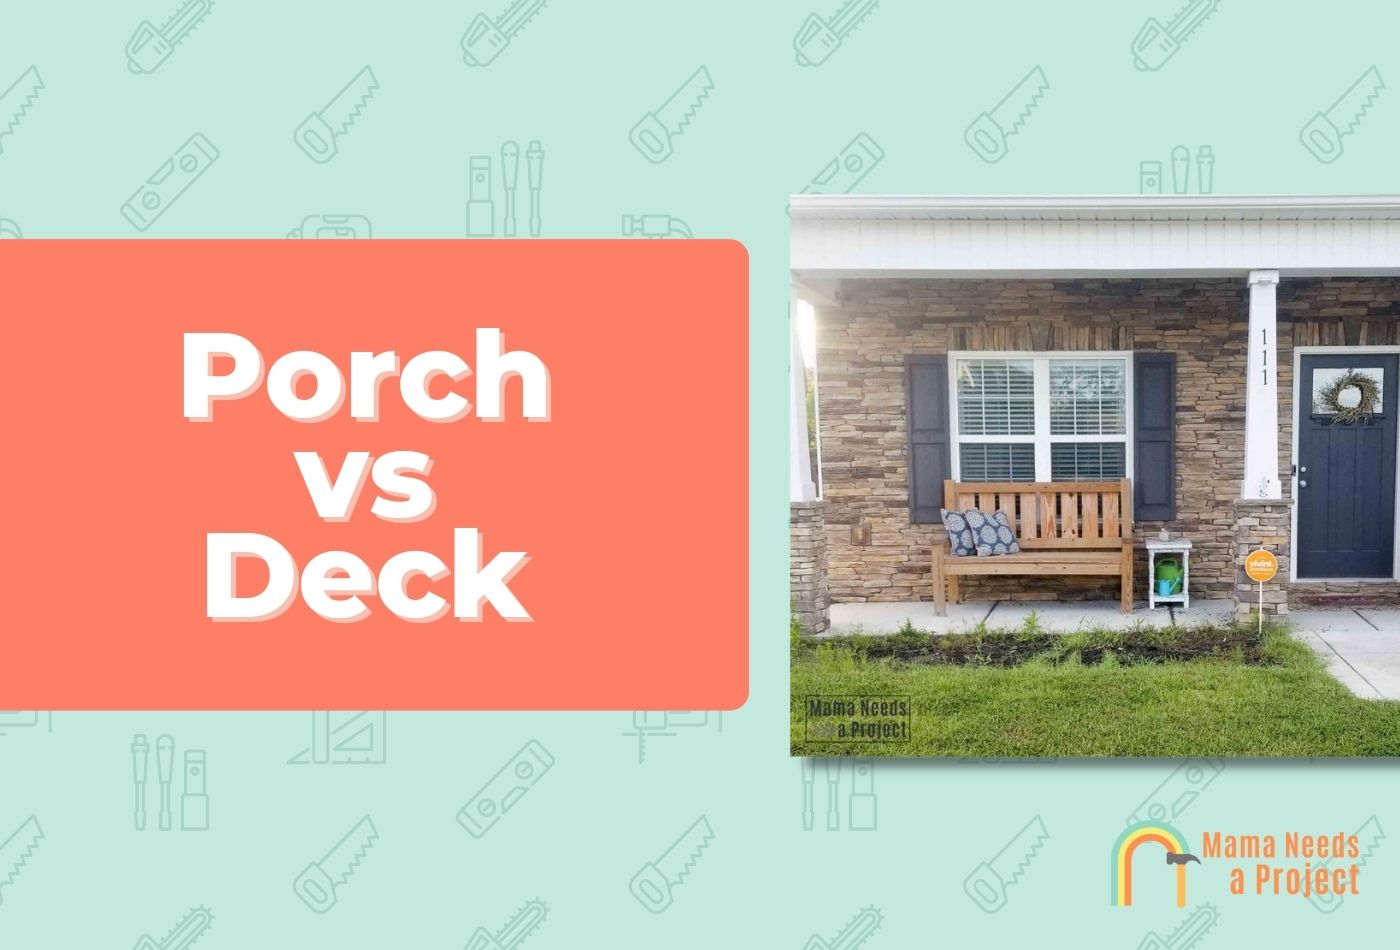 Porch vs Deck